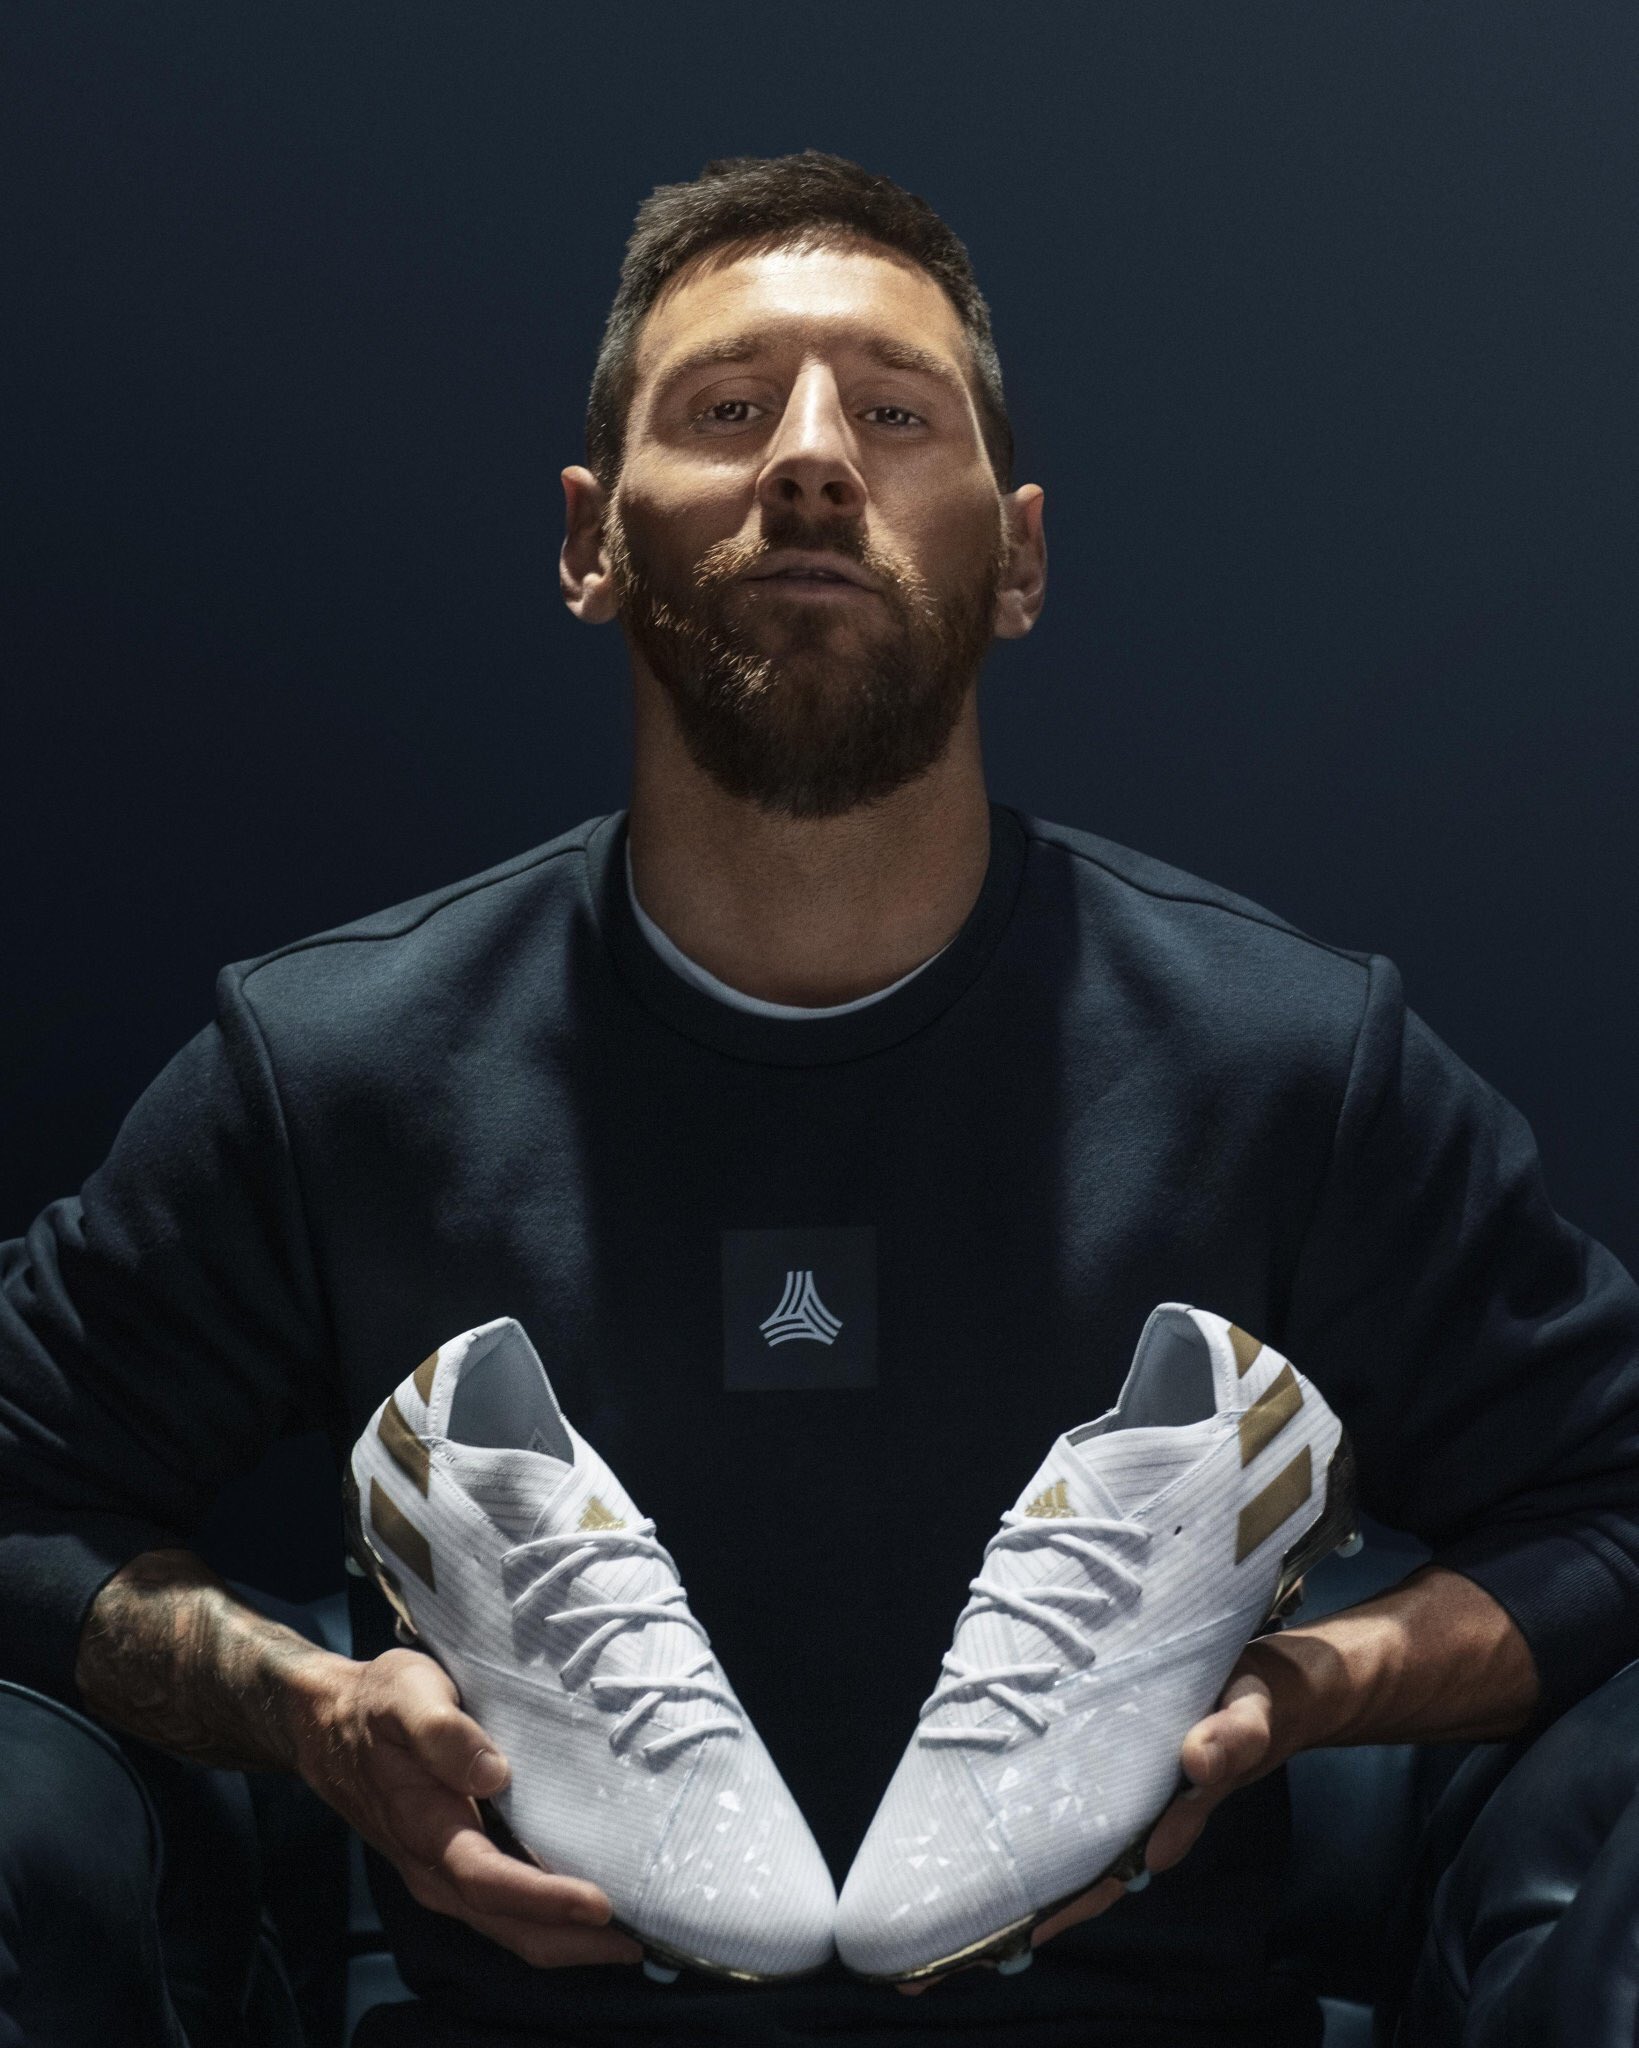 Ataque Futbolero on Twitter: botines Nemeziz que lanzó Adidas en homenaje a los 15 años del debut oficial de Messi en Barcelona. Justo el día que ganó su sexta Bota